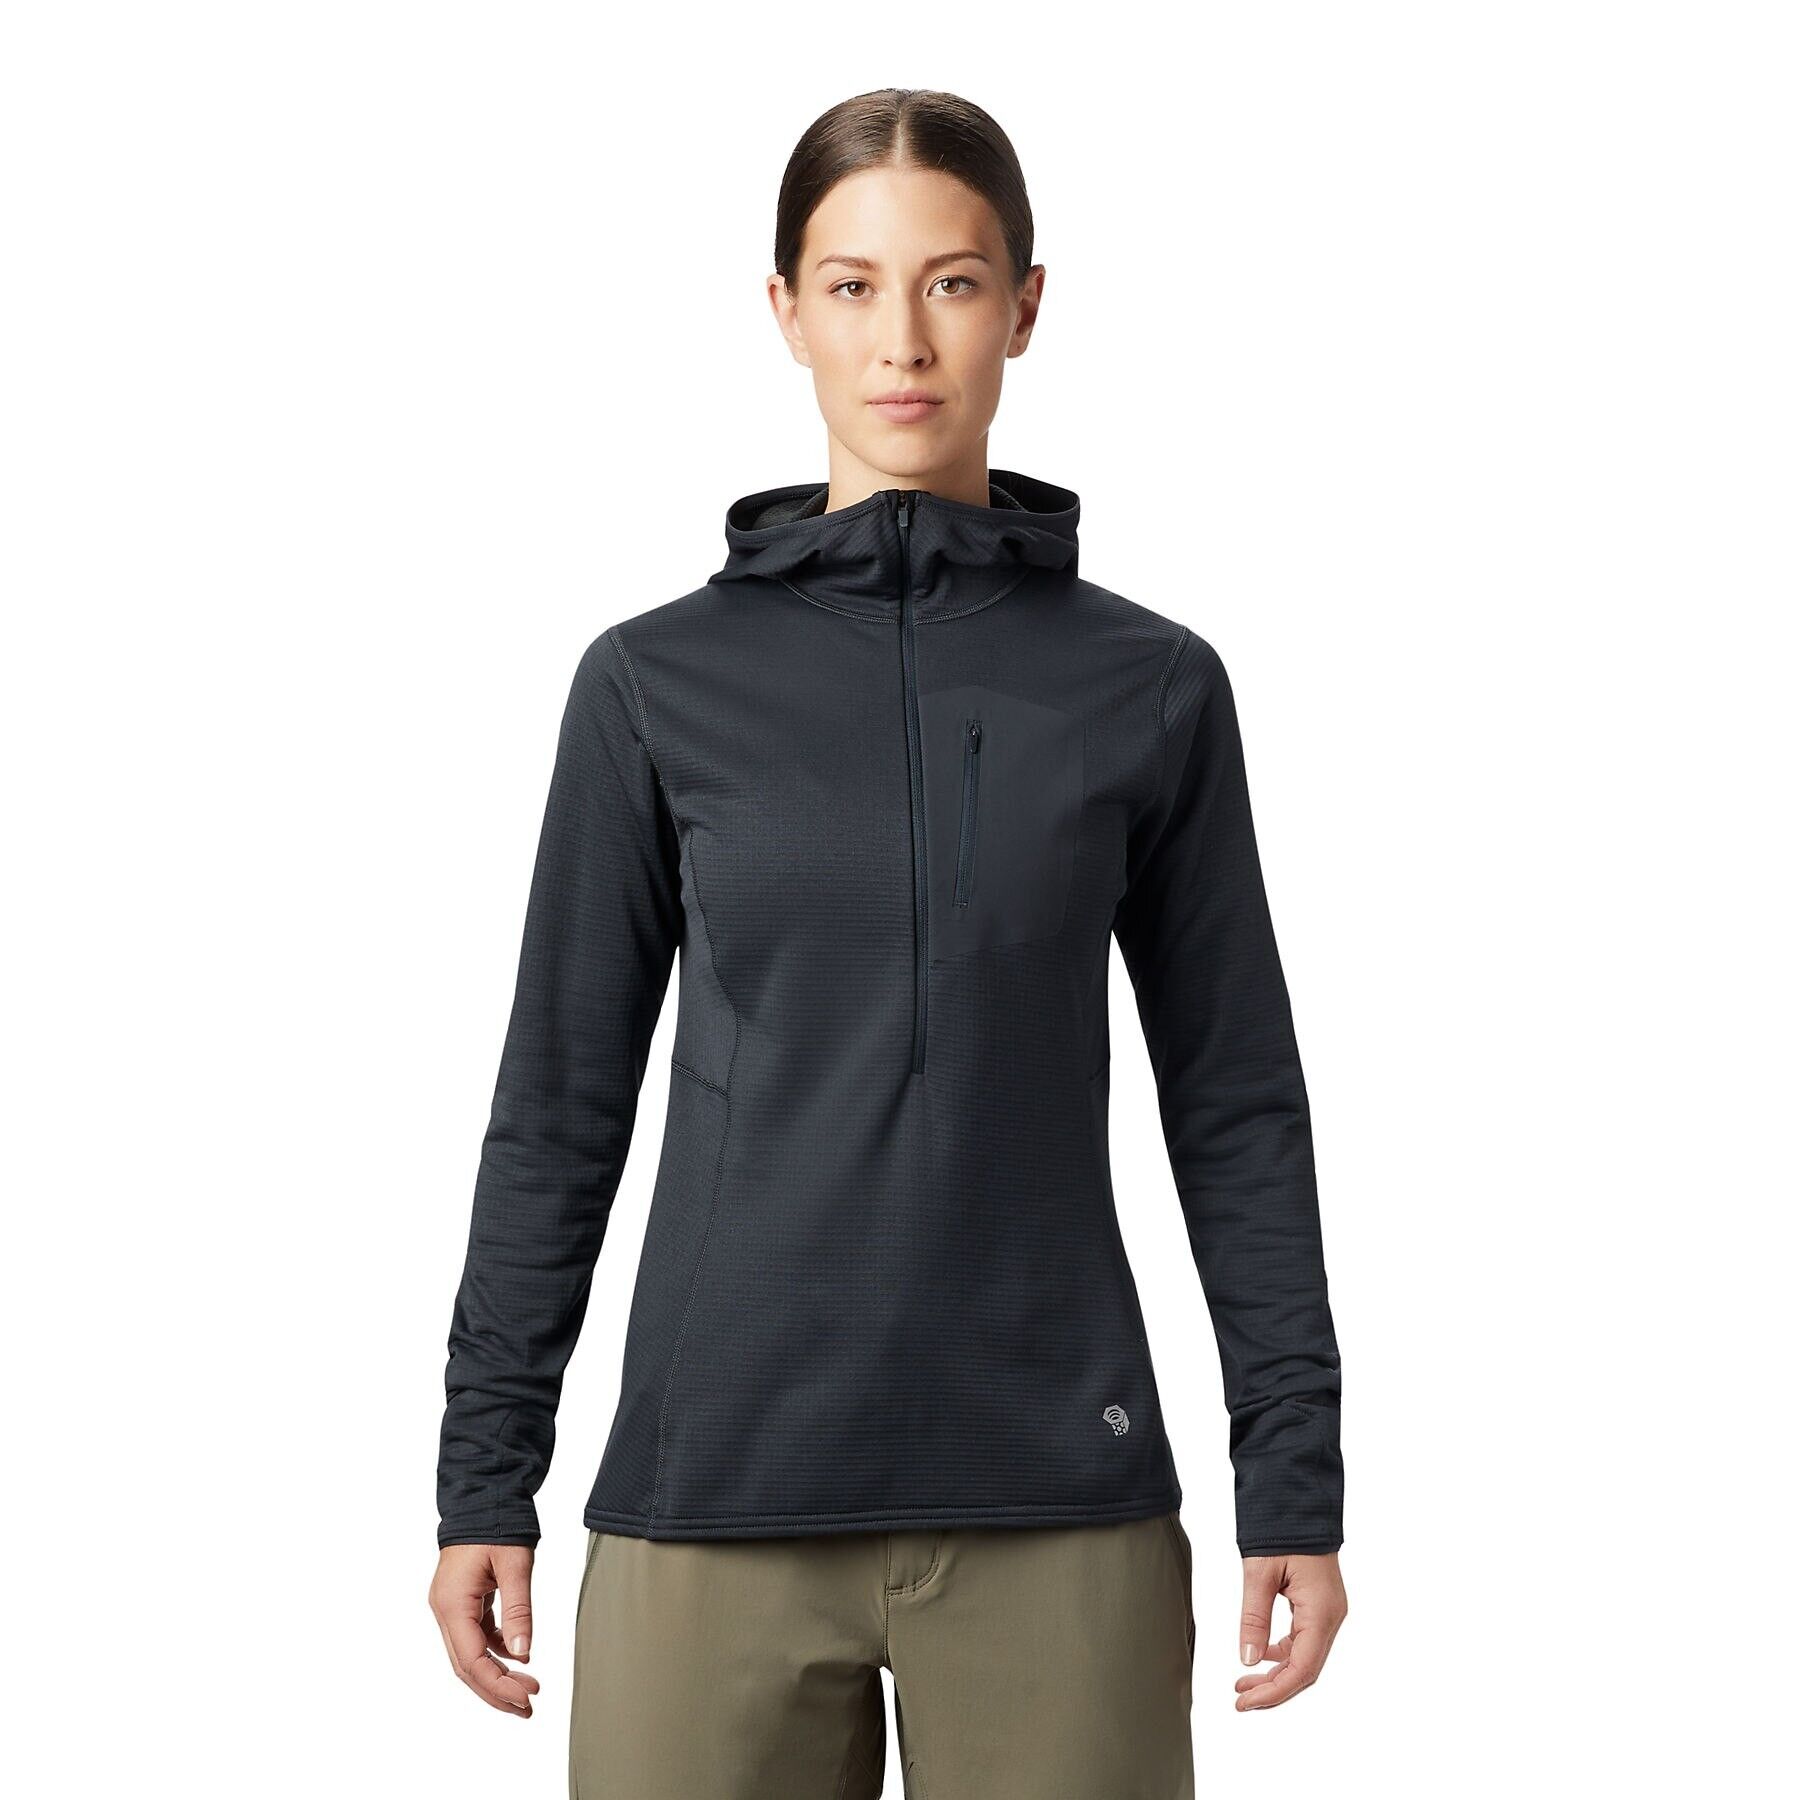 Mountain Hardwear Type 2 Fun 3/4 Zip Hoody - Fleece jacket - Women's